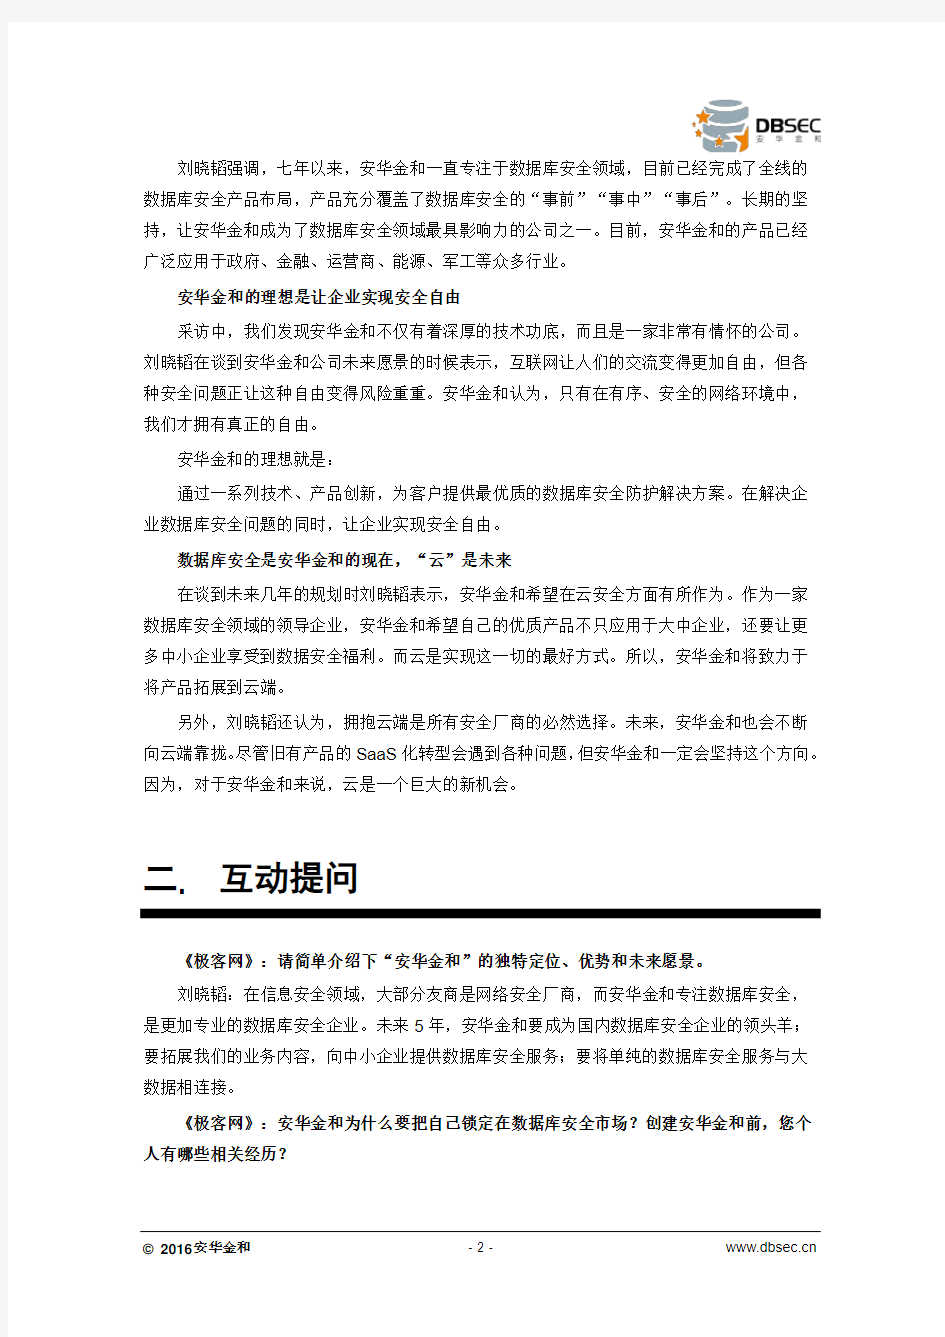 极客网专访丨安华金和刘晓韬：打造数据库安全壁垒 布局未来云端安全